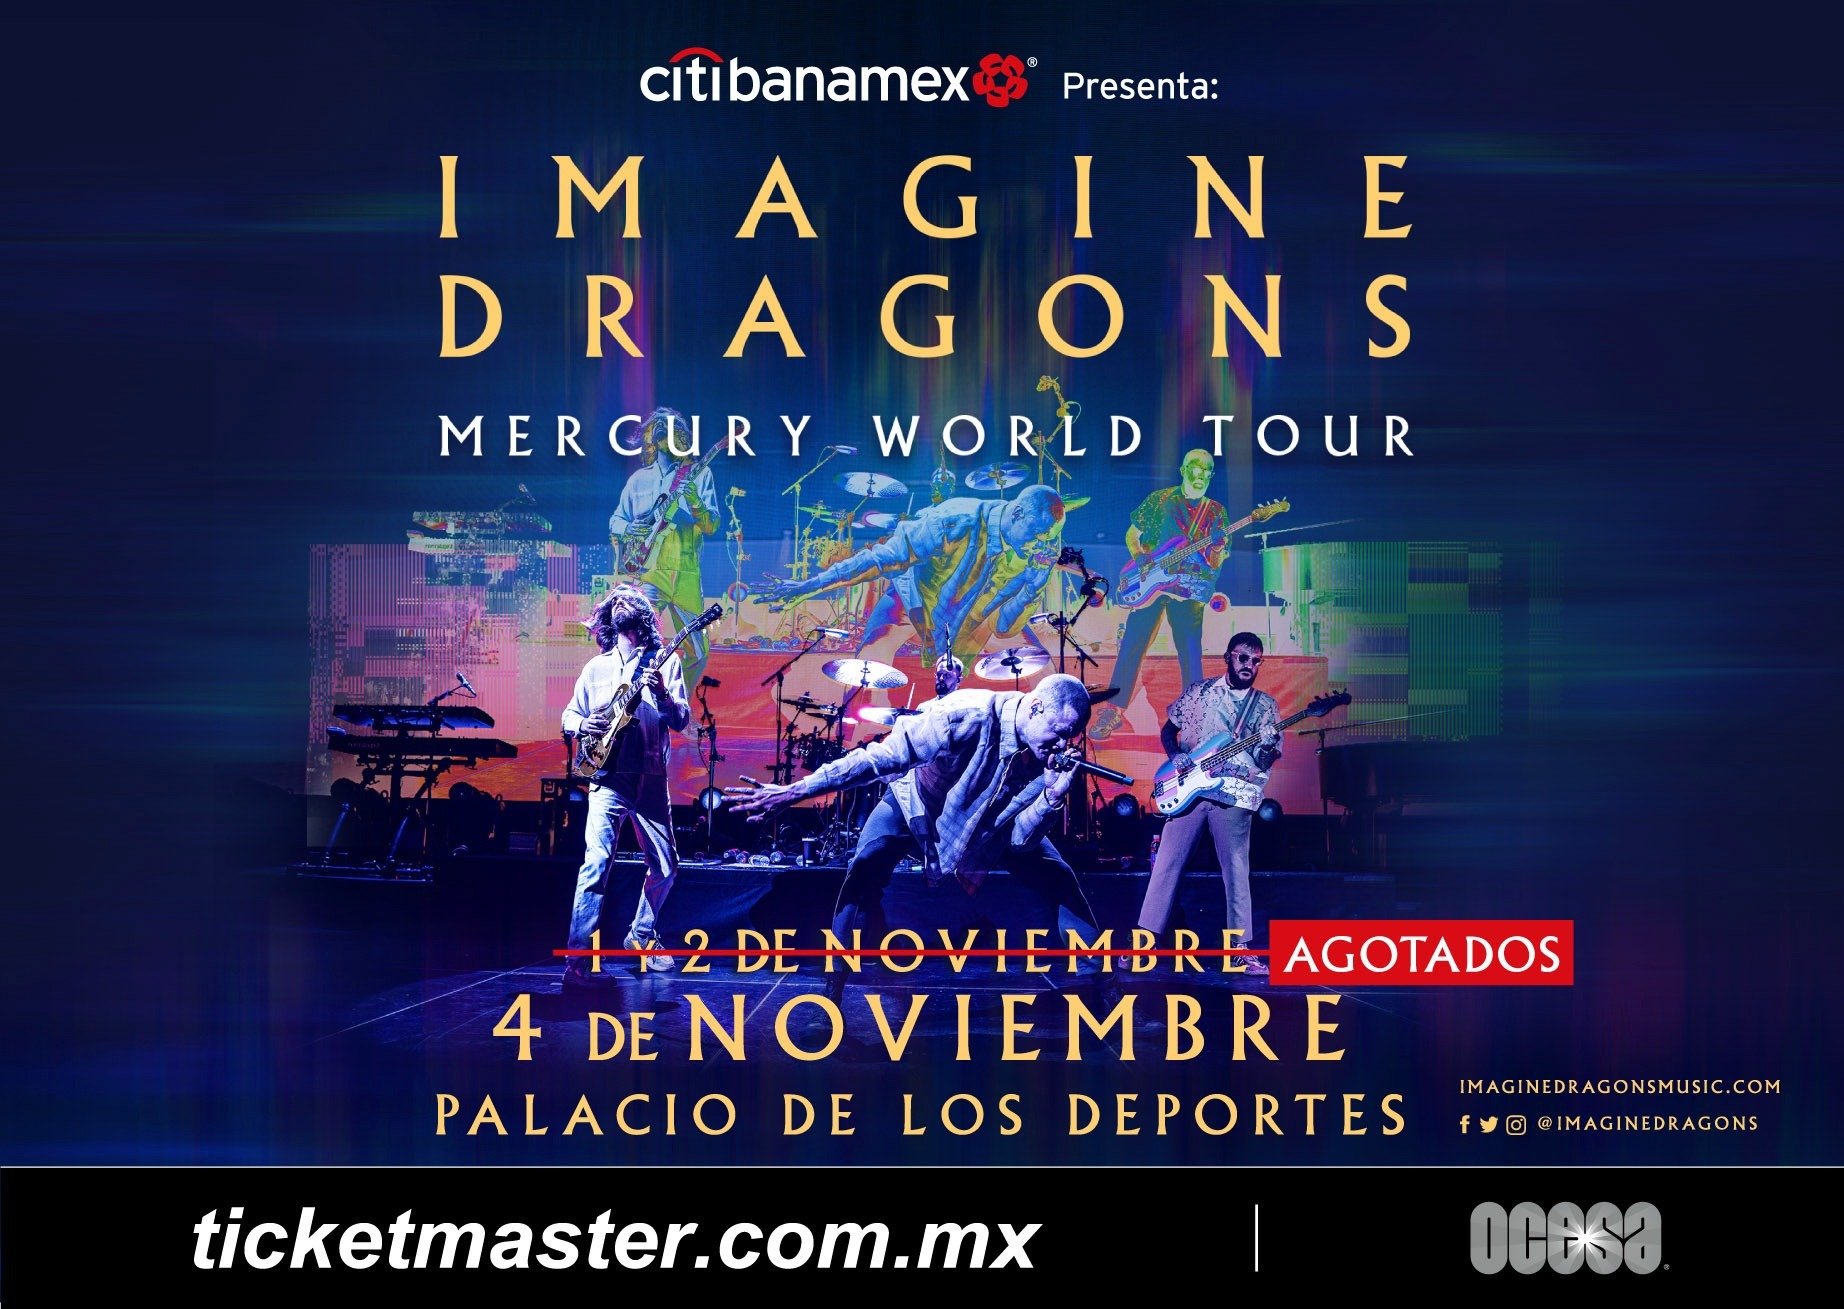 IMAGINE DRAGONS ANUNCIA LA TERCERA FECHA DE “MERCURY WORLD TOUR” EN